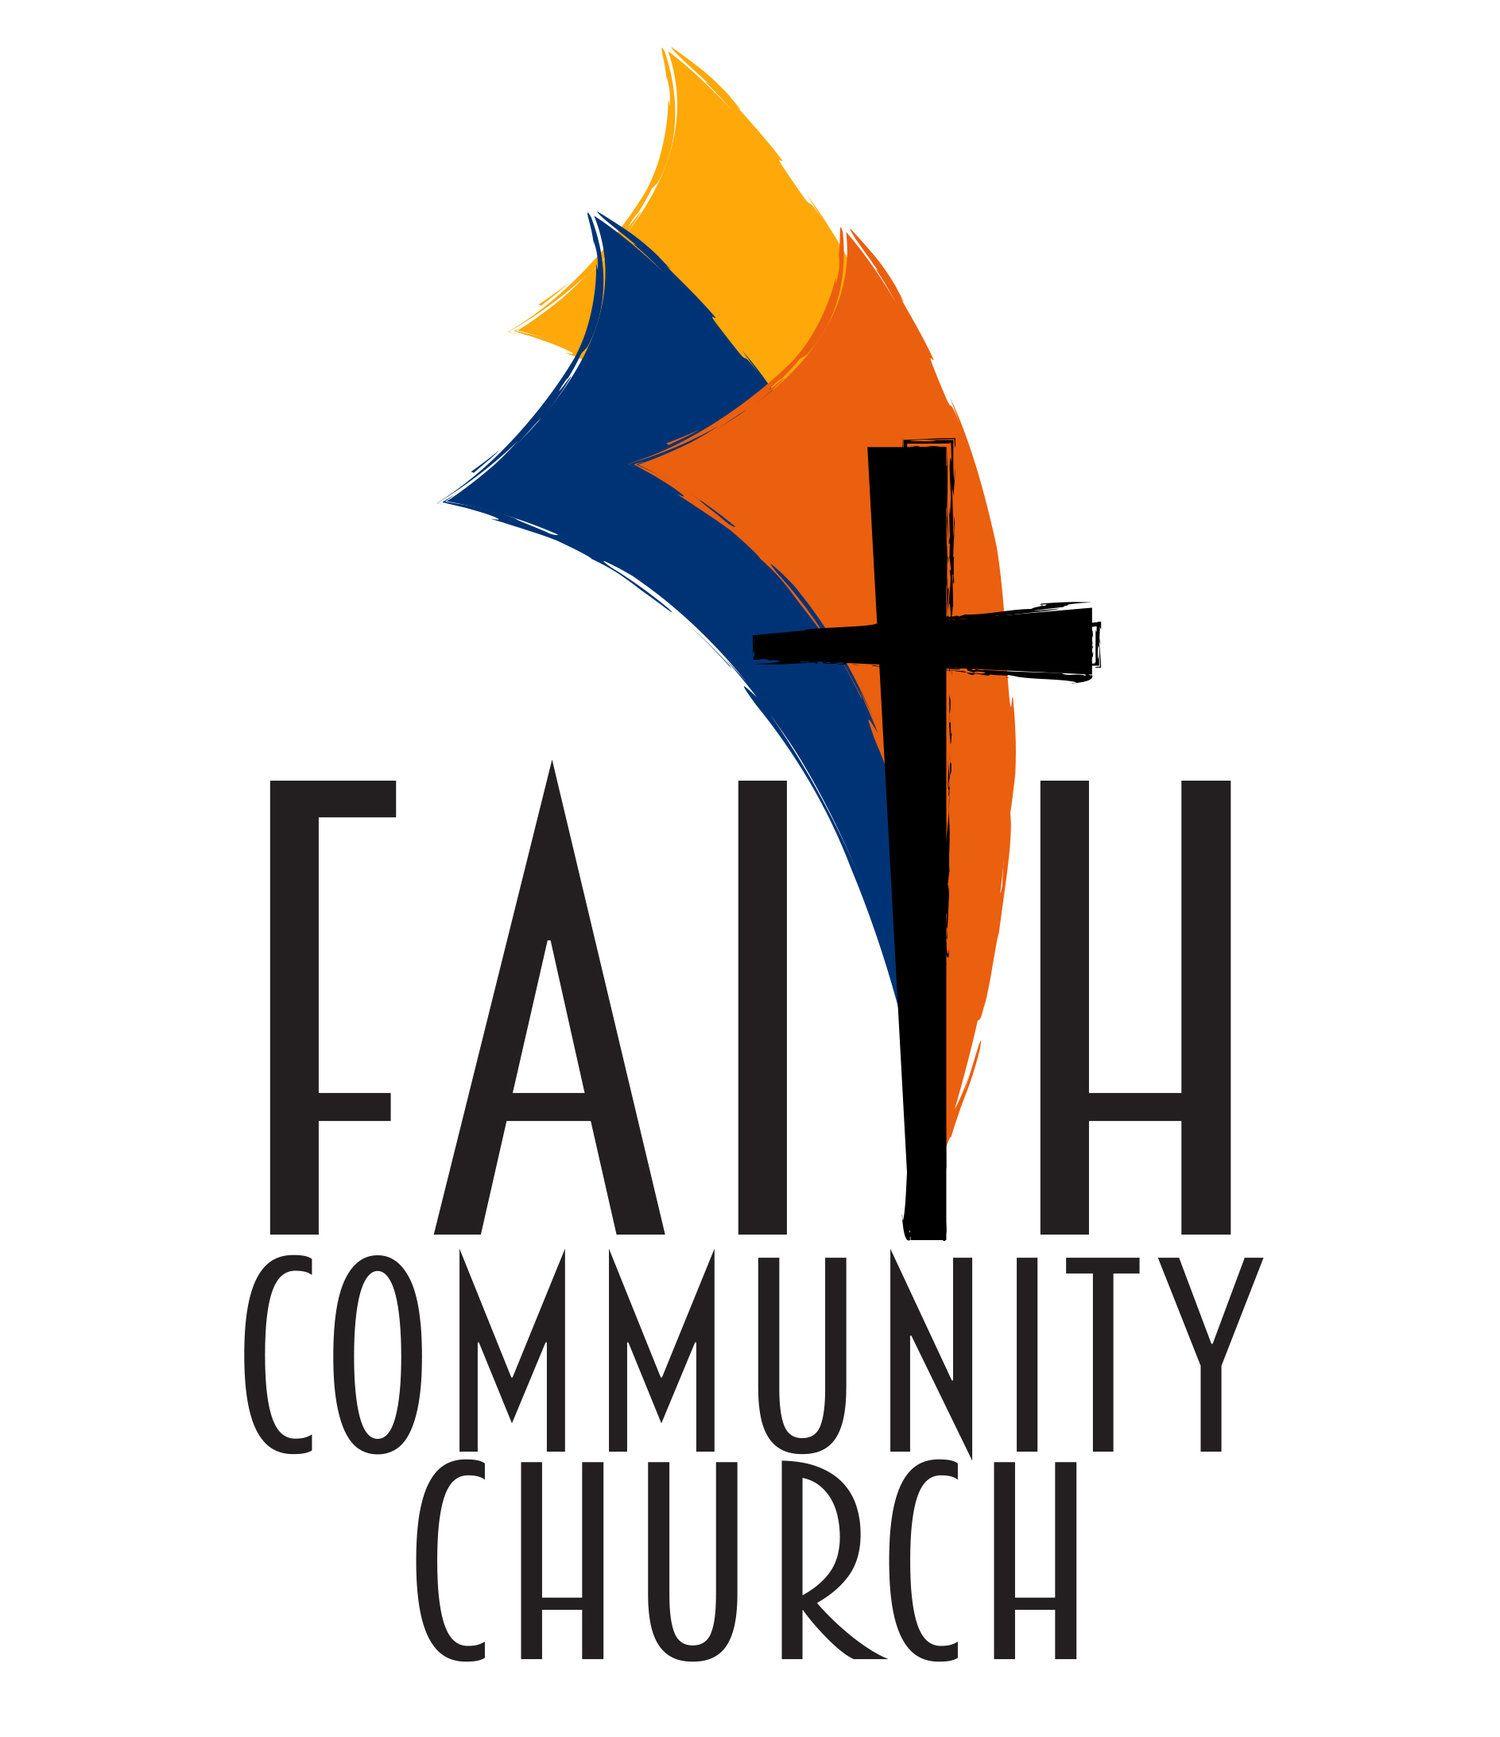 Faith Community Church Logo - Faith Community Church